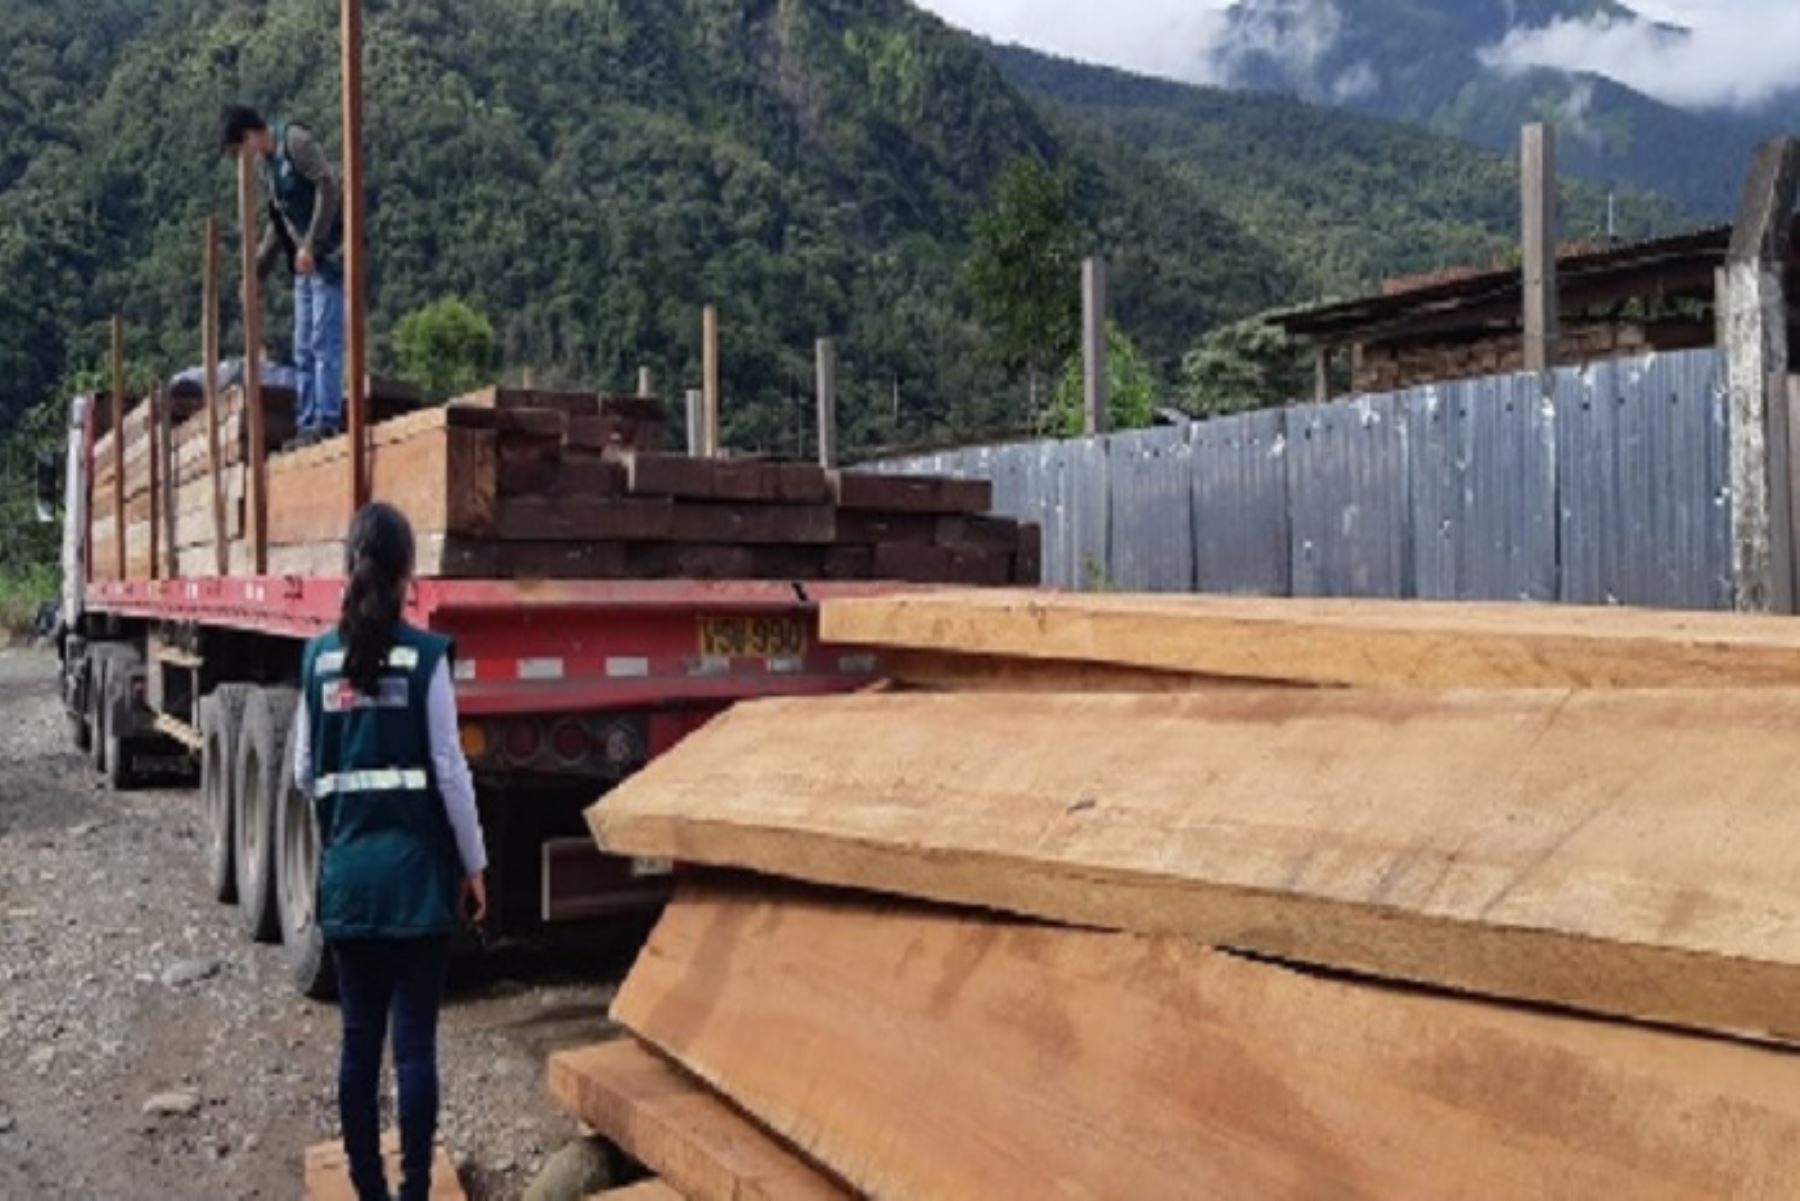 l vehículo que provenía de Madre de Dios hacia Arequipa fue intervenido en el distrito de San Gabán, provincia de Carabaya cuando transportaba madera de las especies misa, pashaco y guacamayo